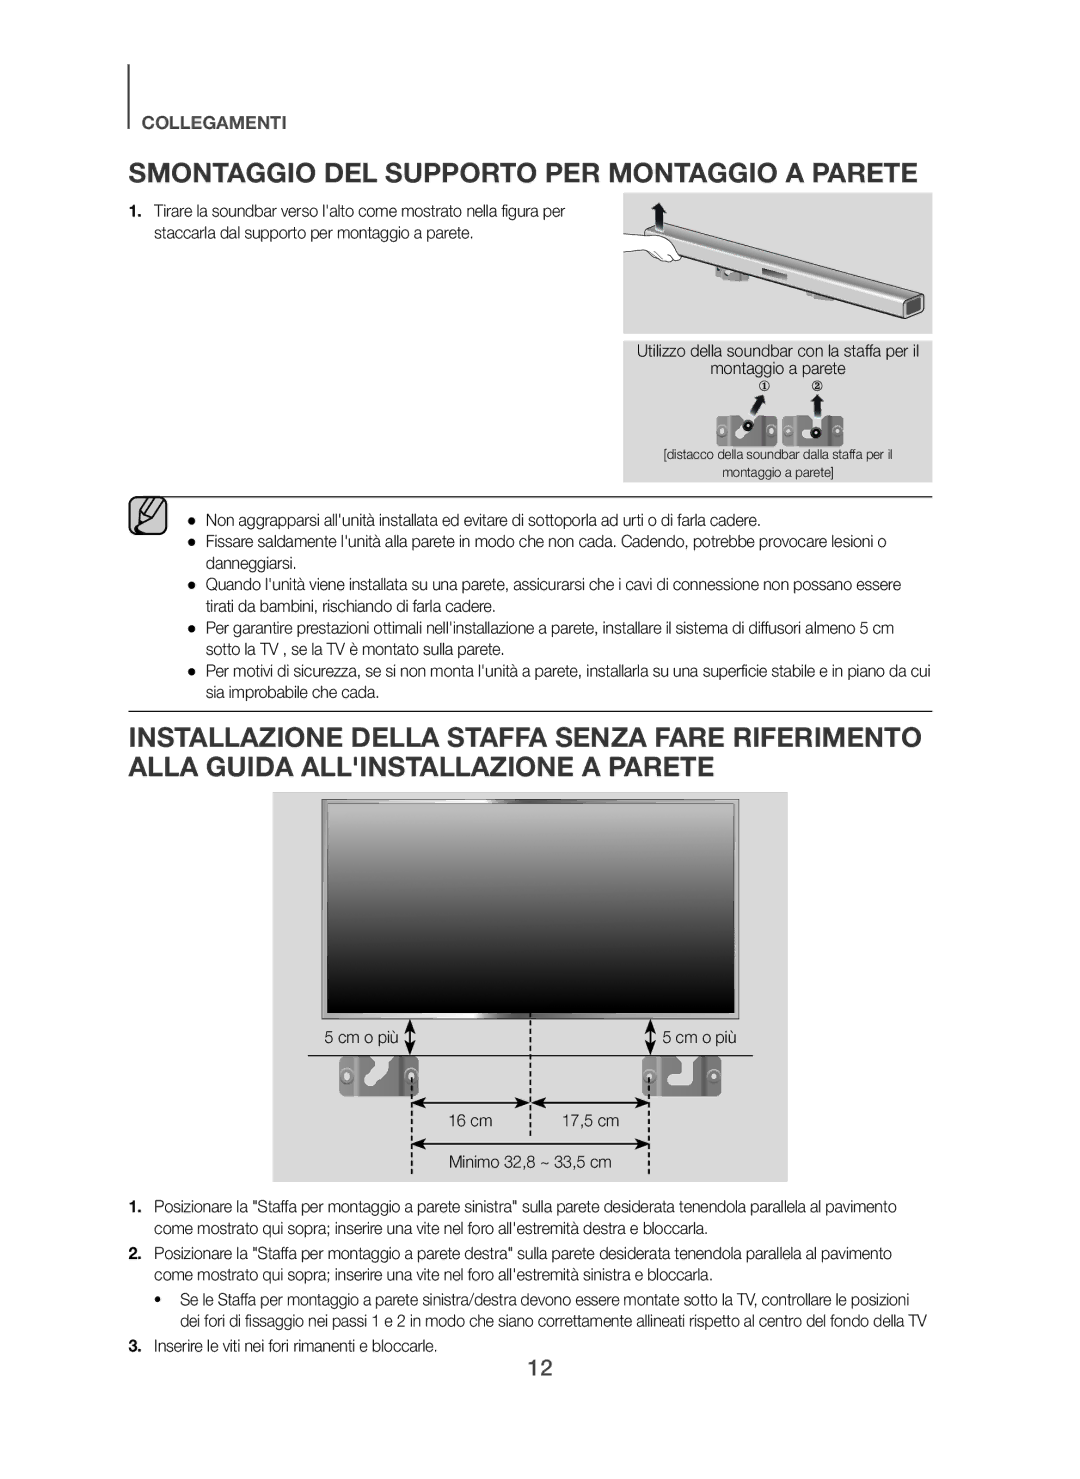 Samsung HW-H450/ZF, HW-H450/TK manual Smontaggio DEL Supporto PER Montaggio a Parete, Cm o più 16 cm, Minimo 32,8 ~ 33,5 cm 